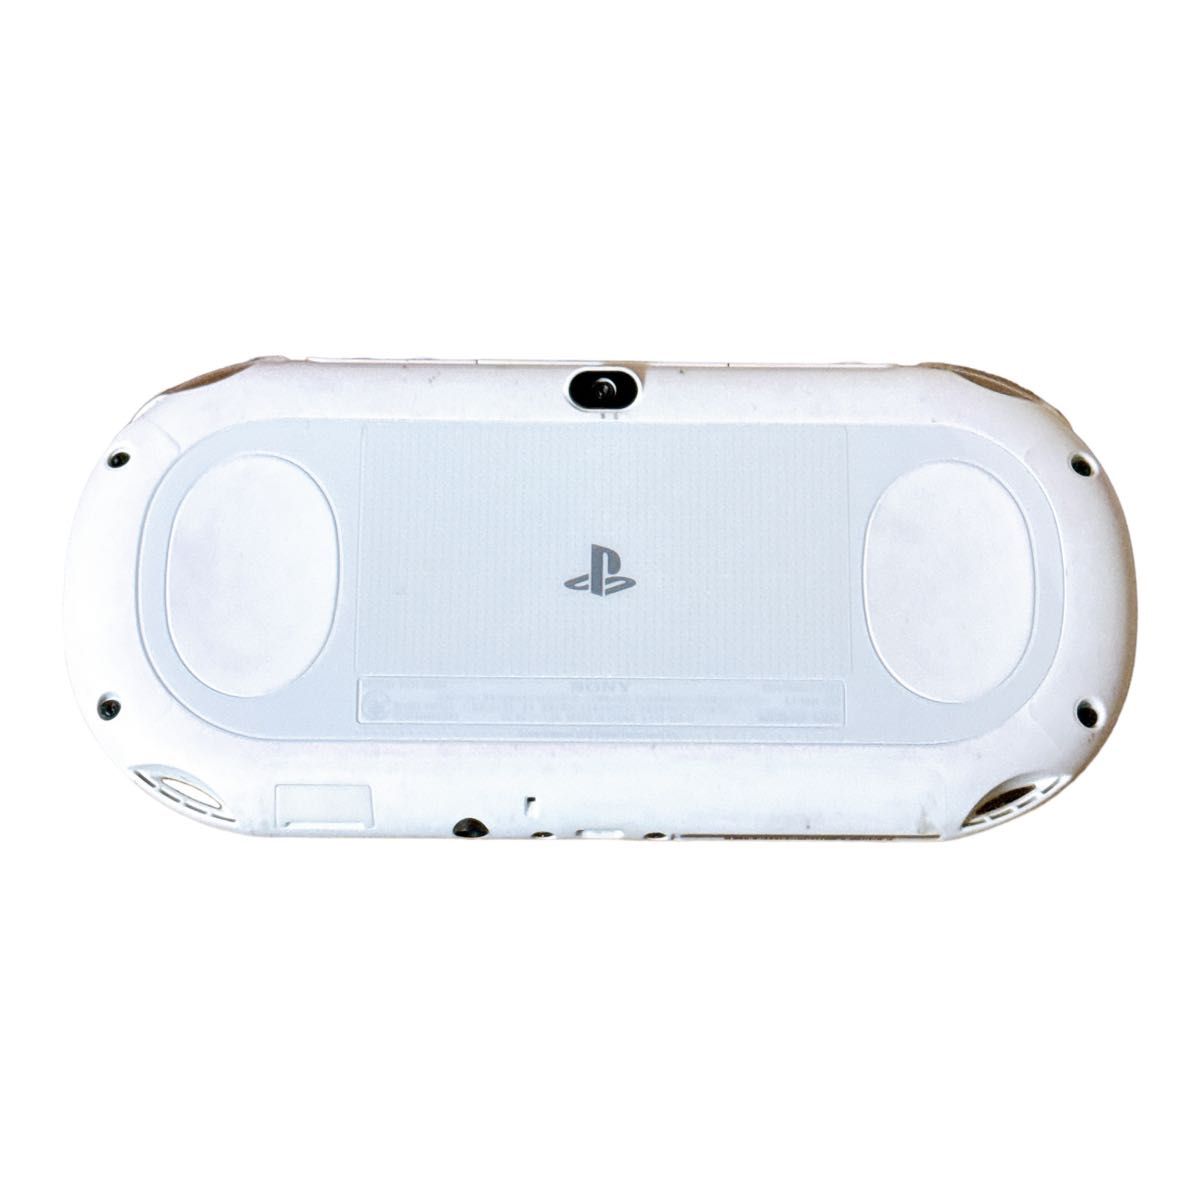 PlayStation Vita Wi-Fiモデル グレイシャー・ホワイト